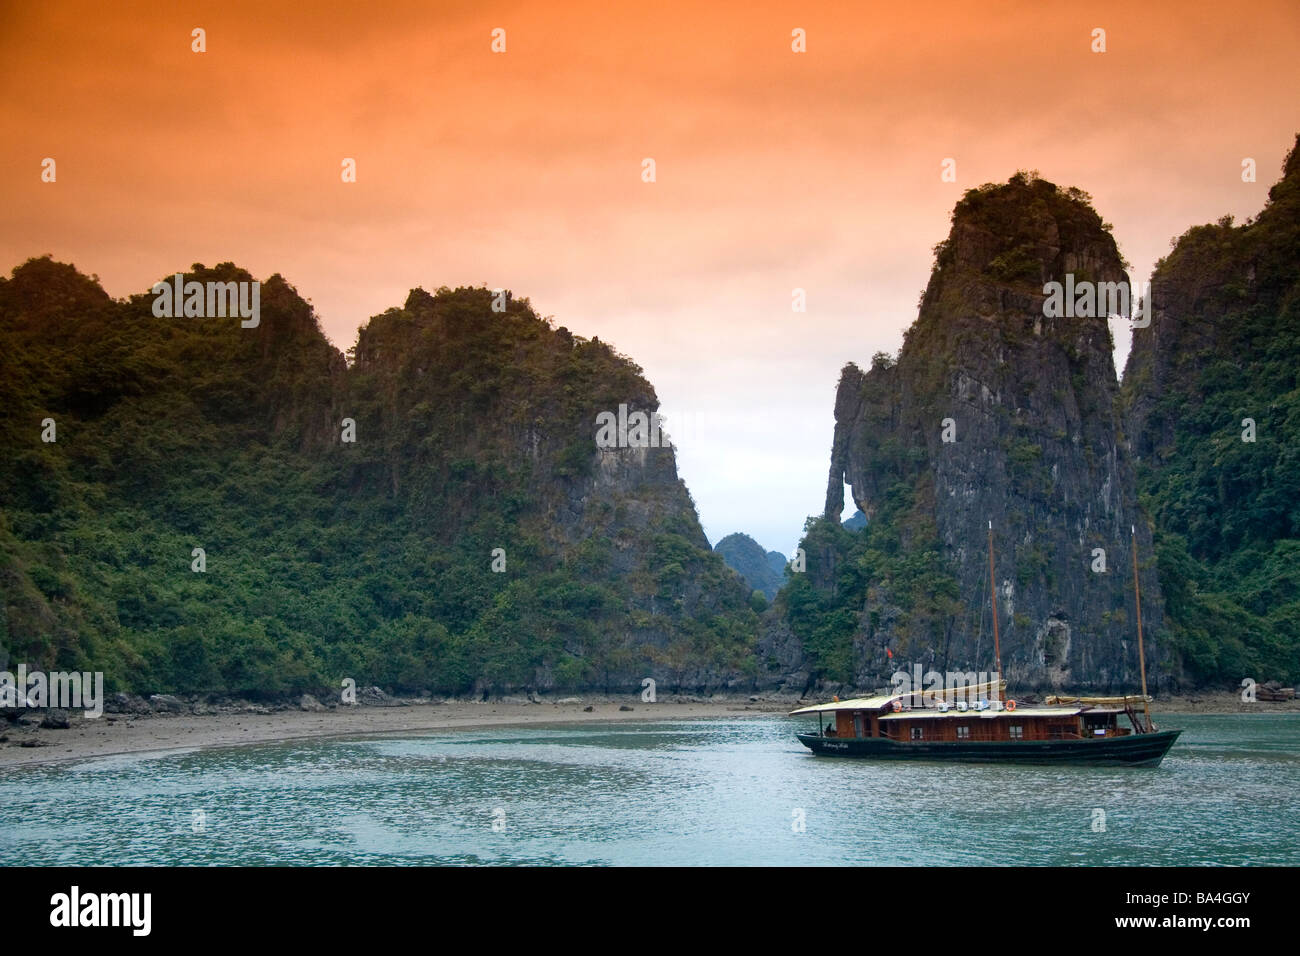 Vue panoramique de karsts calcaires et bateaux de touristes dans la baie de Ha Long Vietnam Banque D'Images